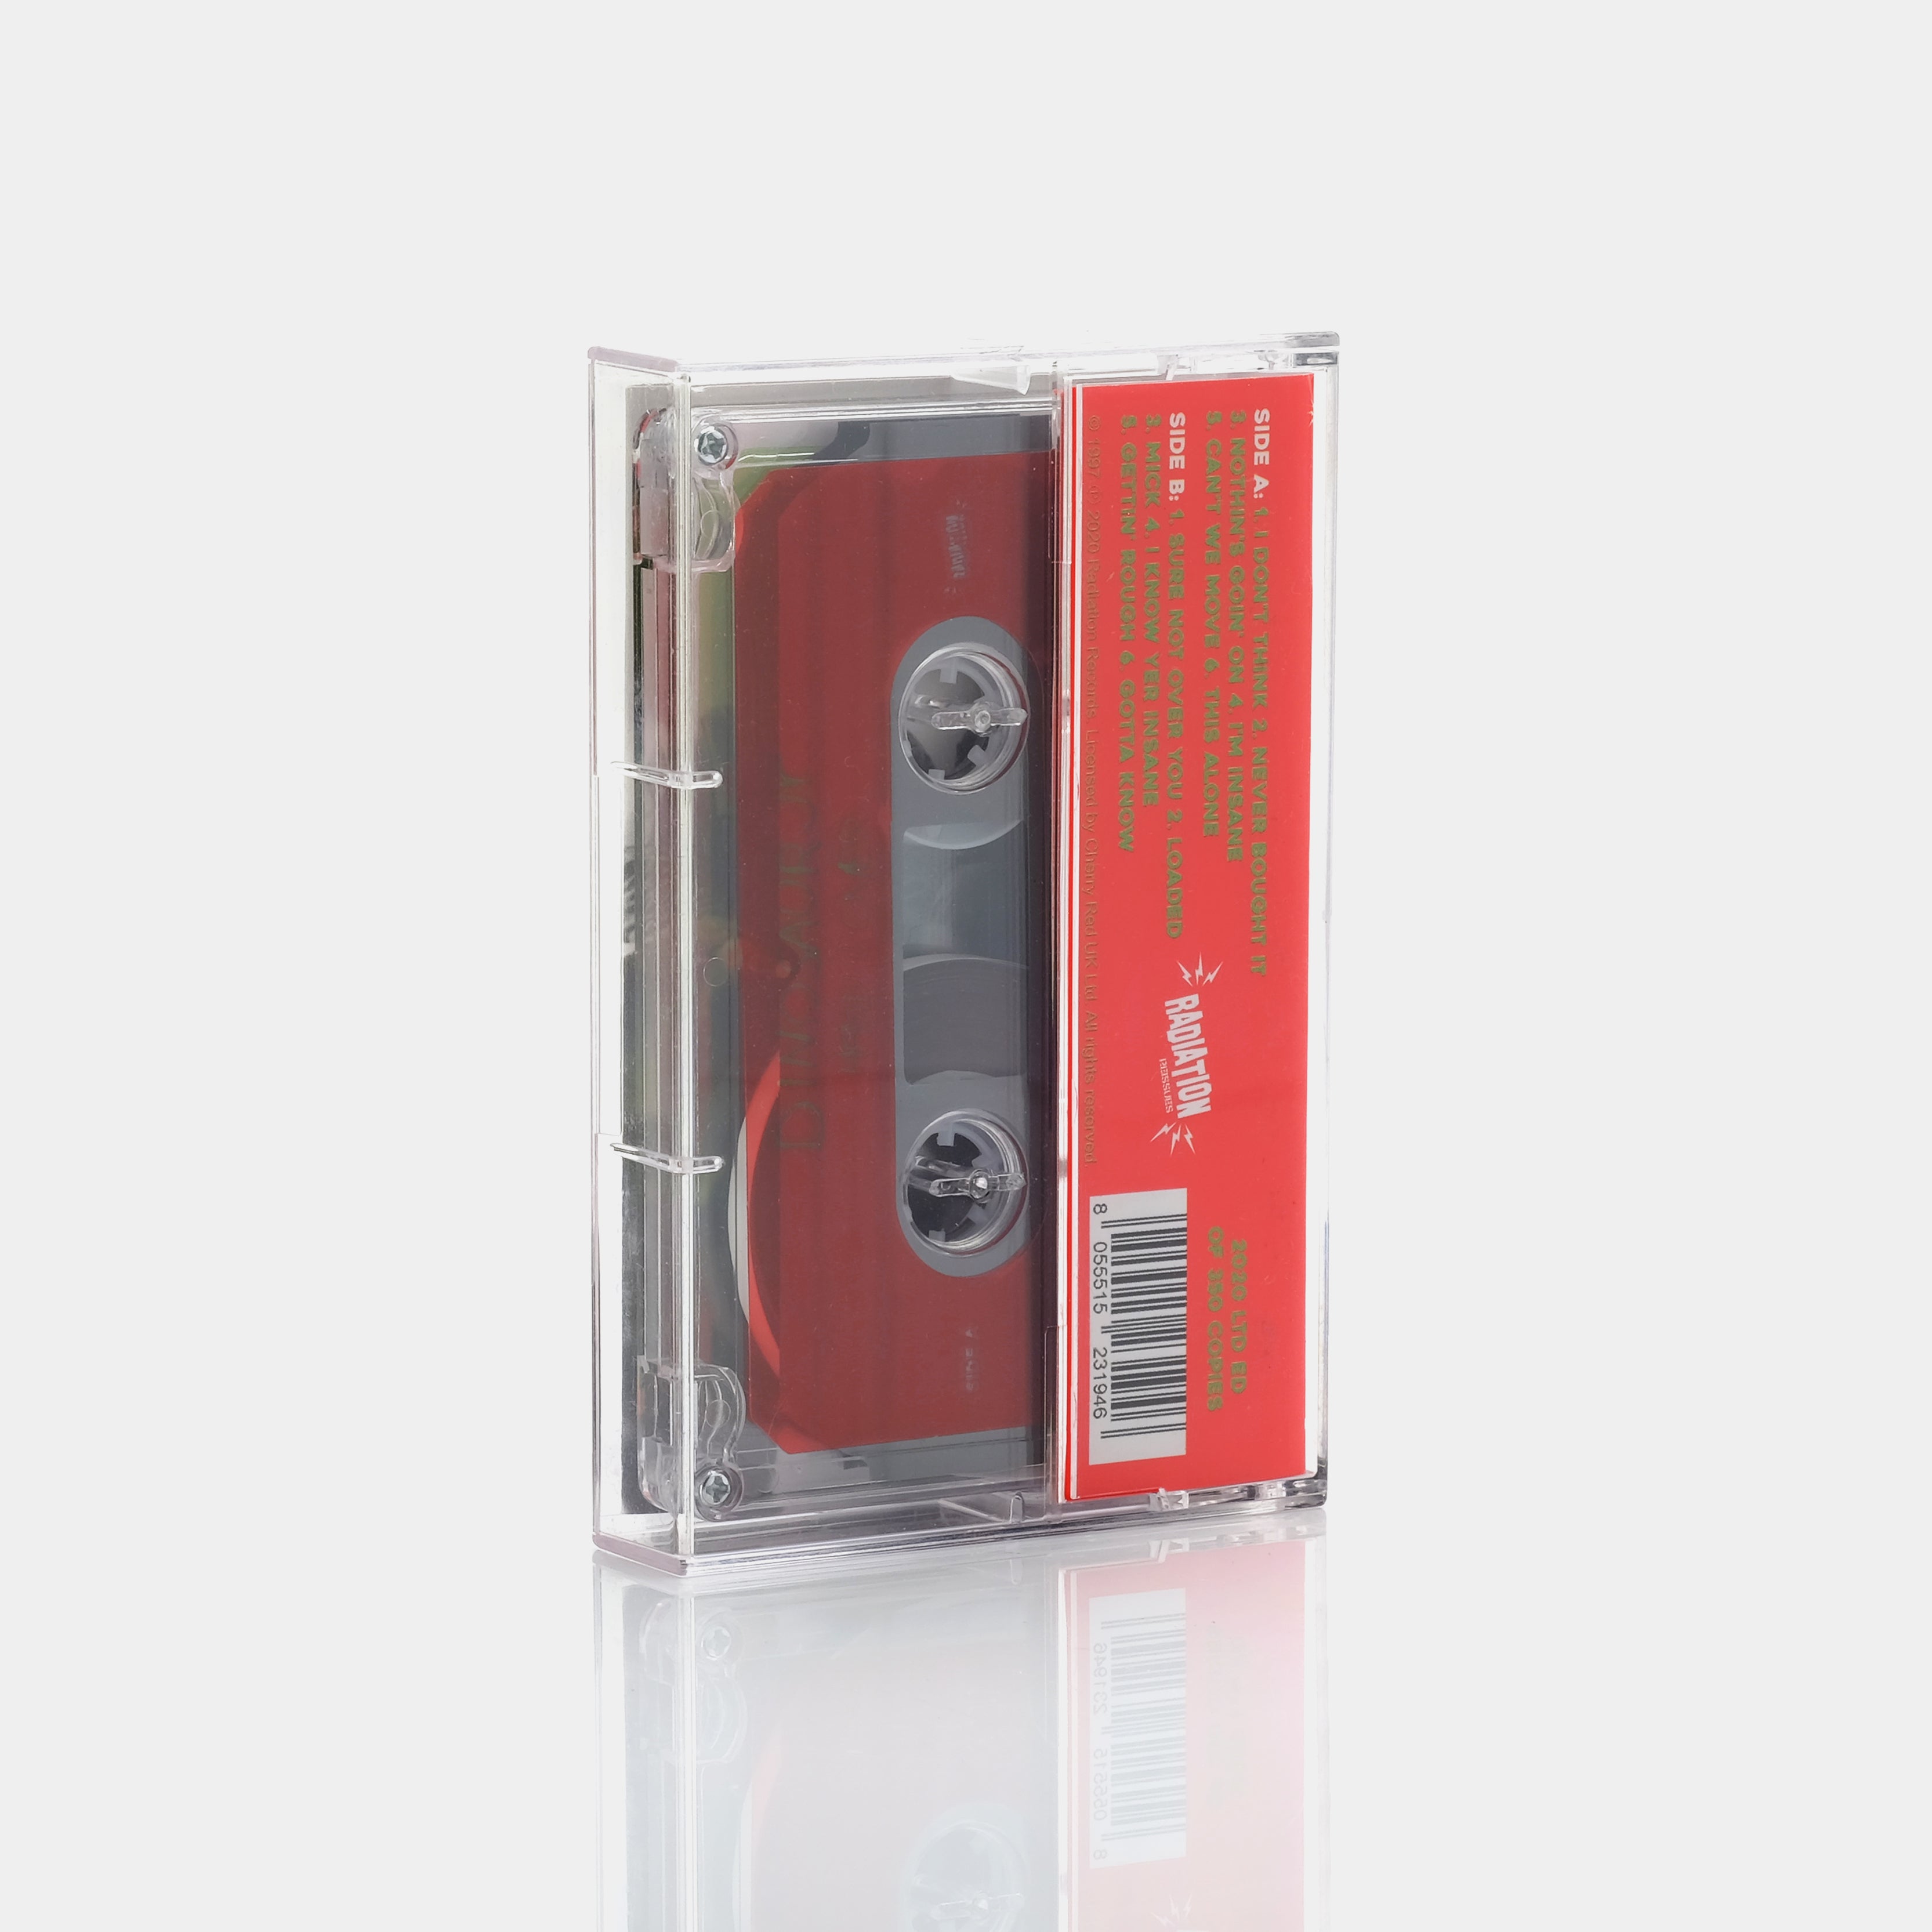 Dinosaur Jr. - Hand It Over Cassette Tape